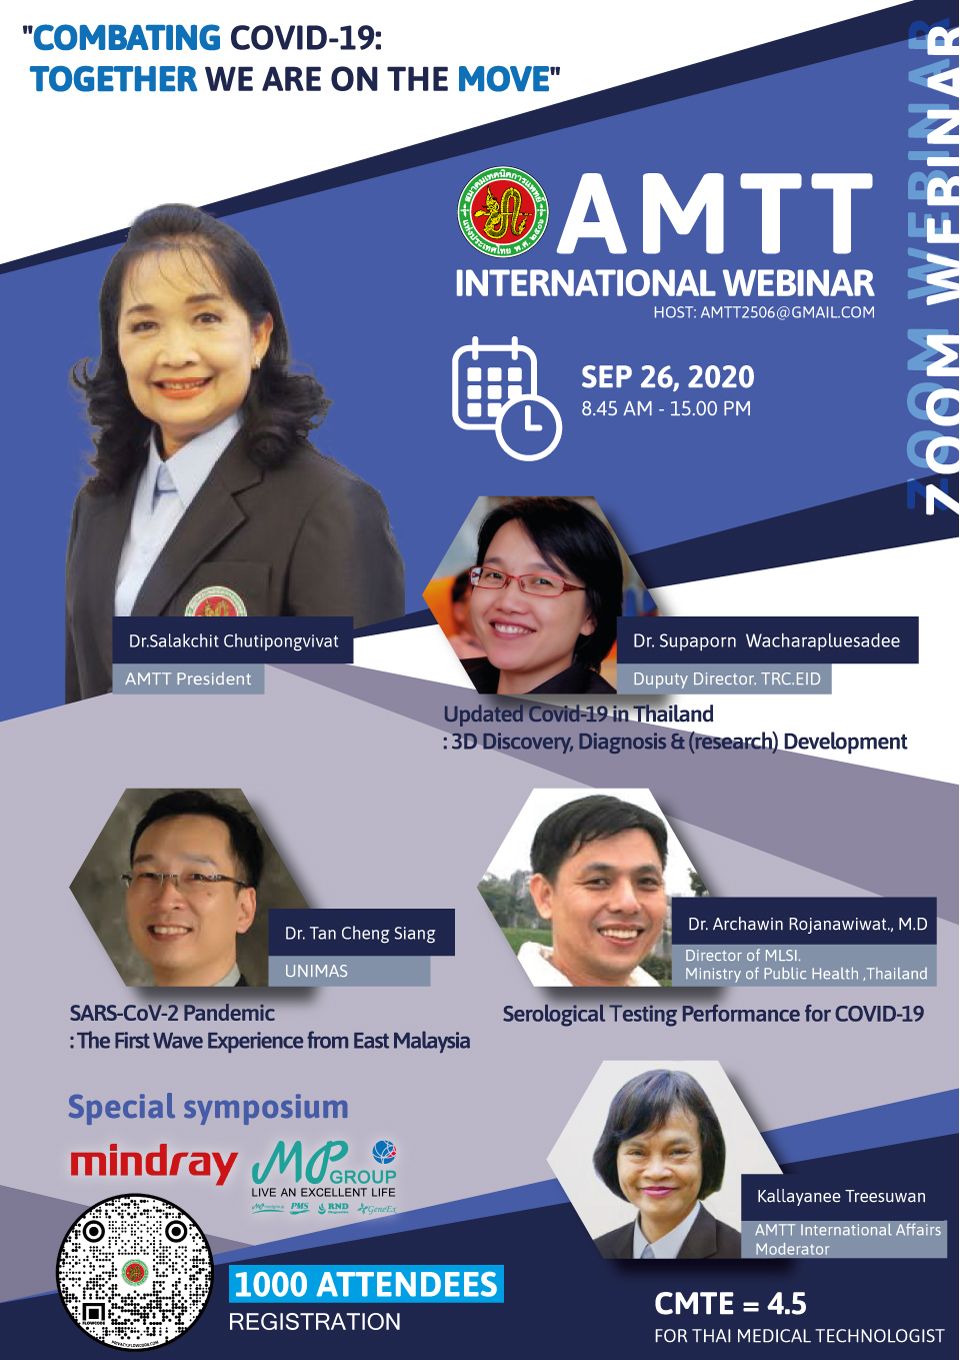 AMTT-international-webinar-portrait-poster_eng.jpg